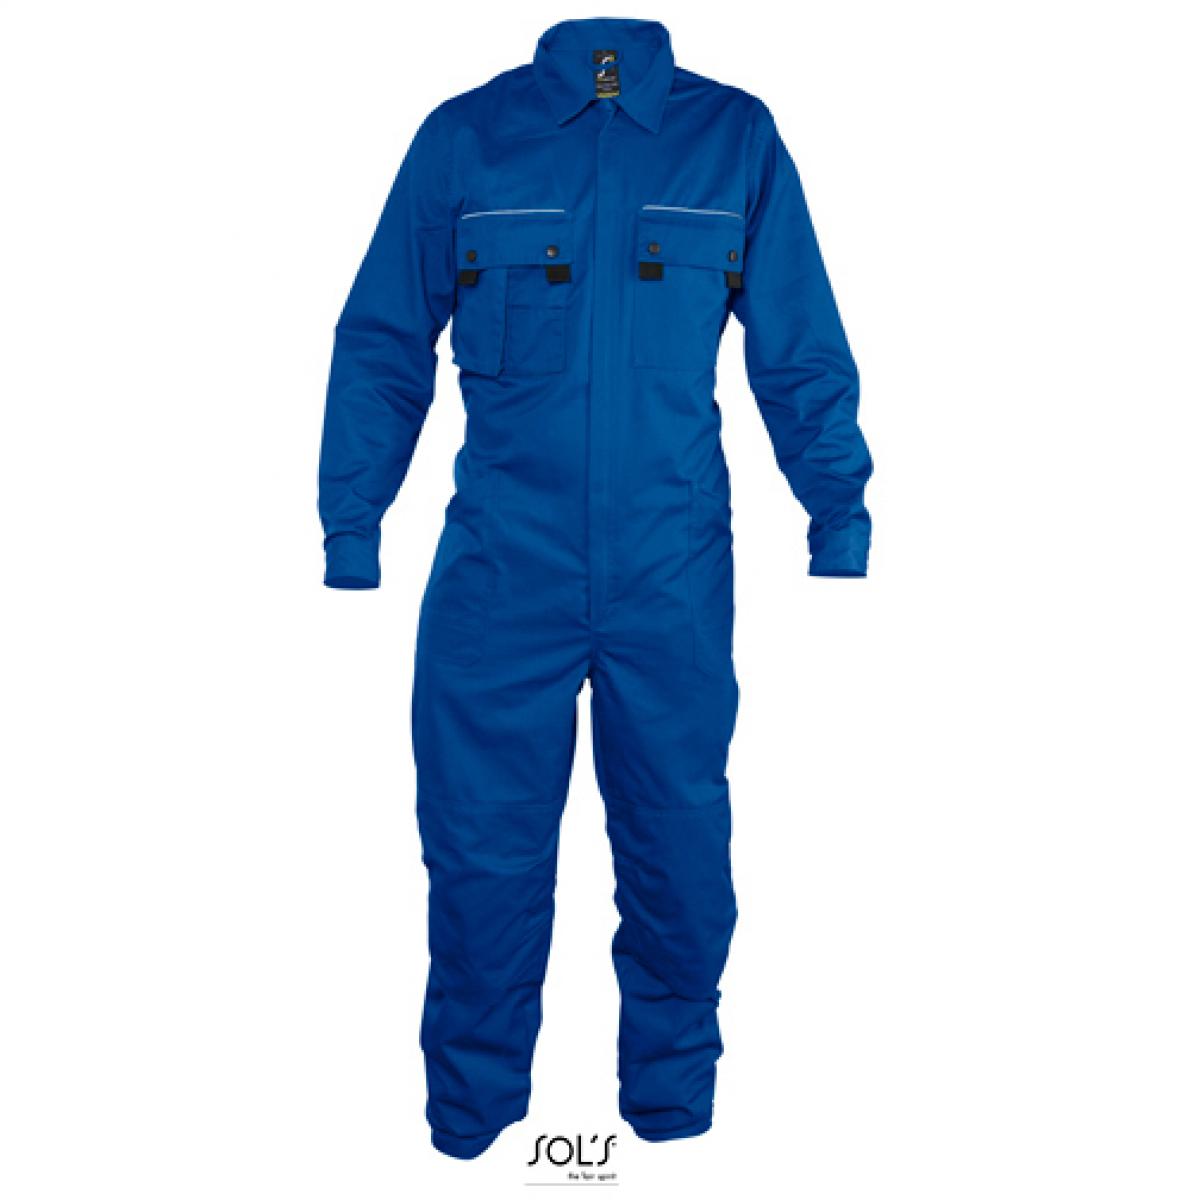 Hersteller: SOLs ProWear Herstellernummer: 80902 Artikelbezeichnung: Herren Workwear Overall Solstice Pro Farbe: Bugatti Blue